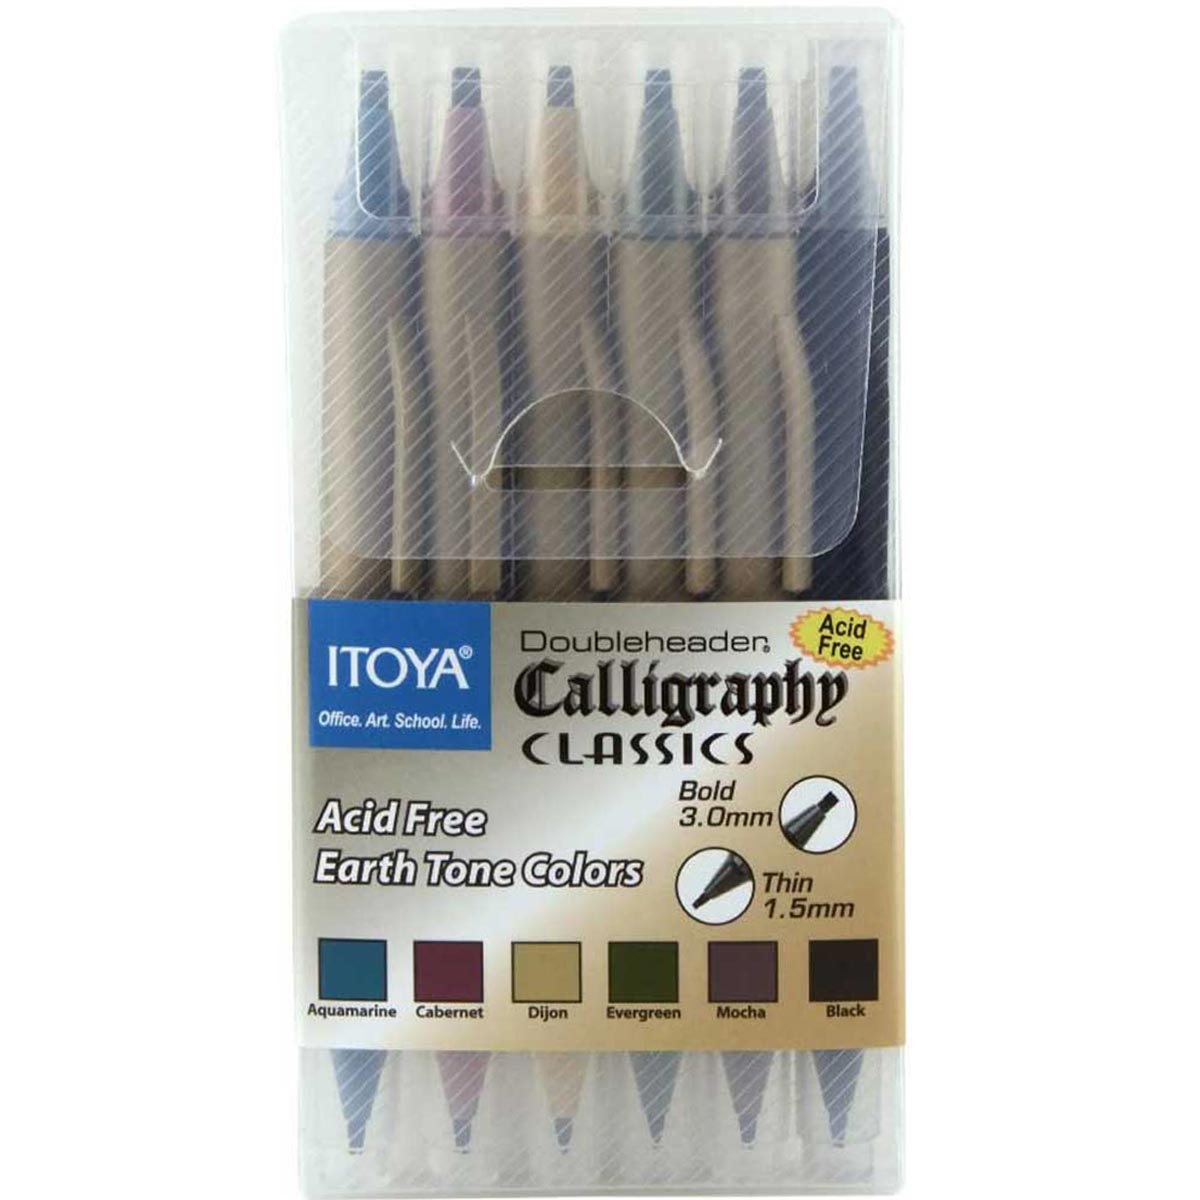 Itoya Doubleheader Calligraphy Earth Tone Colours 6 Pen Set